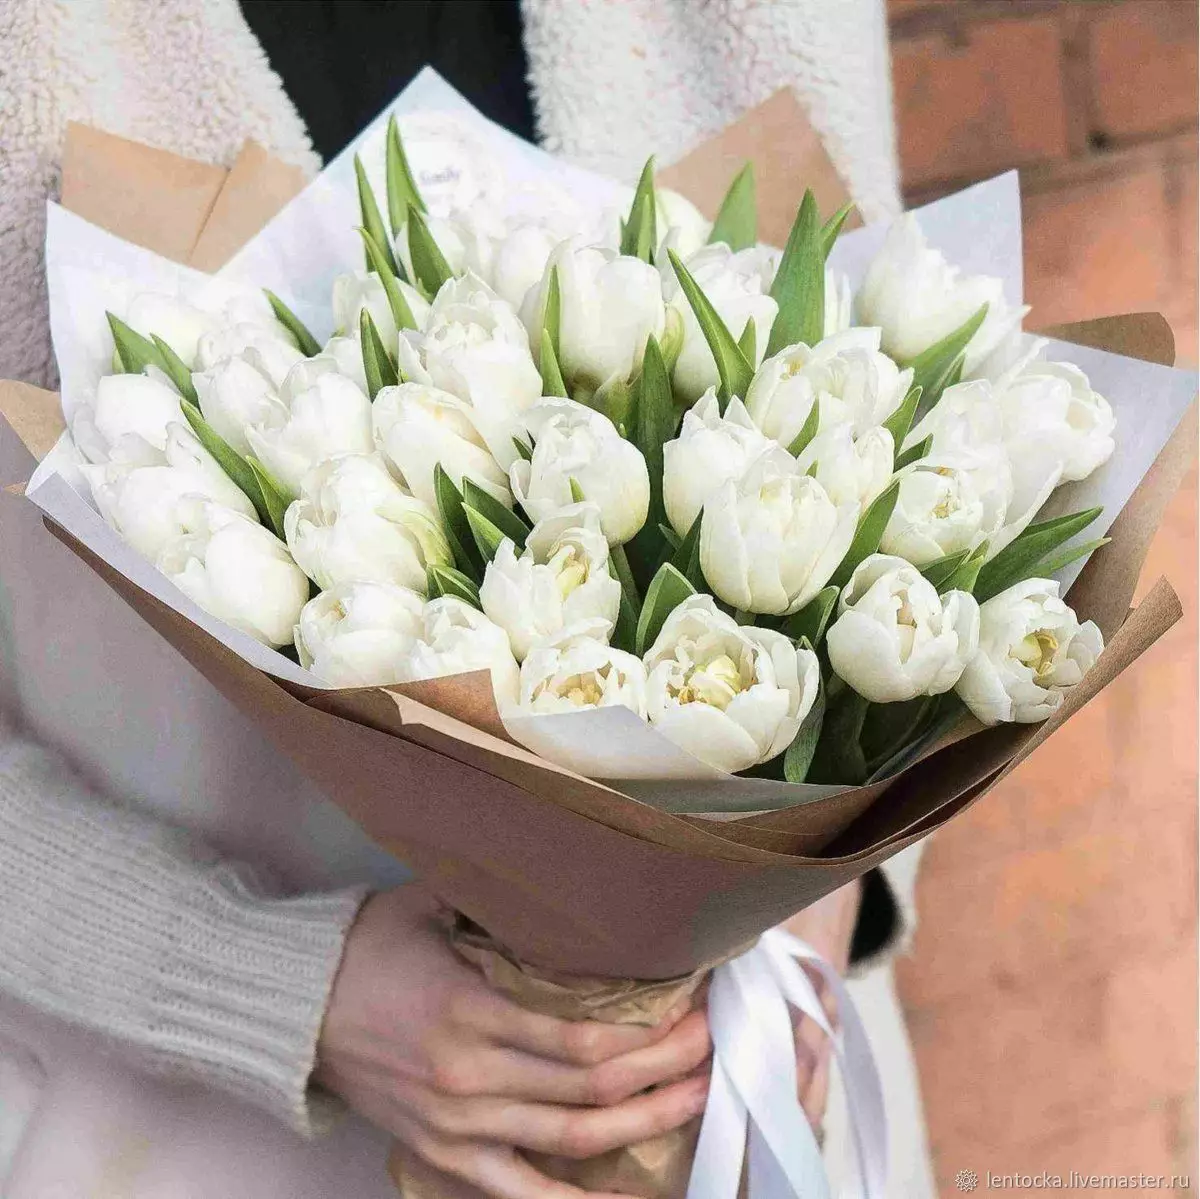 Blomster den 8. marts: Hvad giver piger og kvinder? Hvad er bedre at give min kone? Hvad sælges normalt? Hvorfor er det muligt at give tulipaner? 18190_14